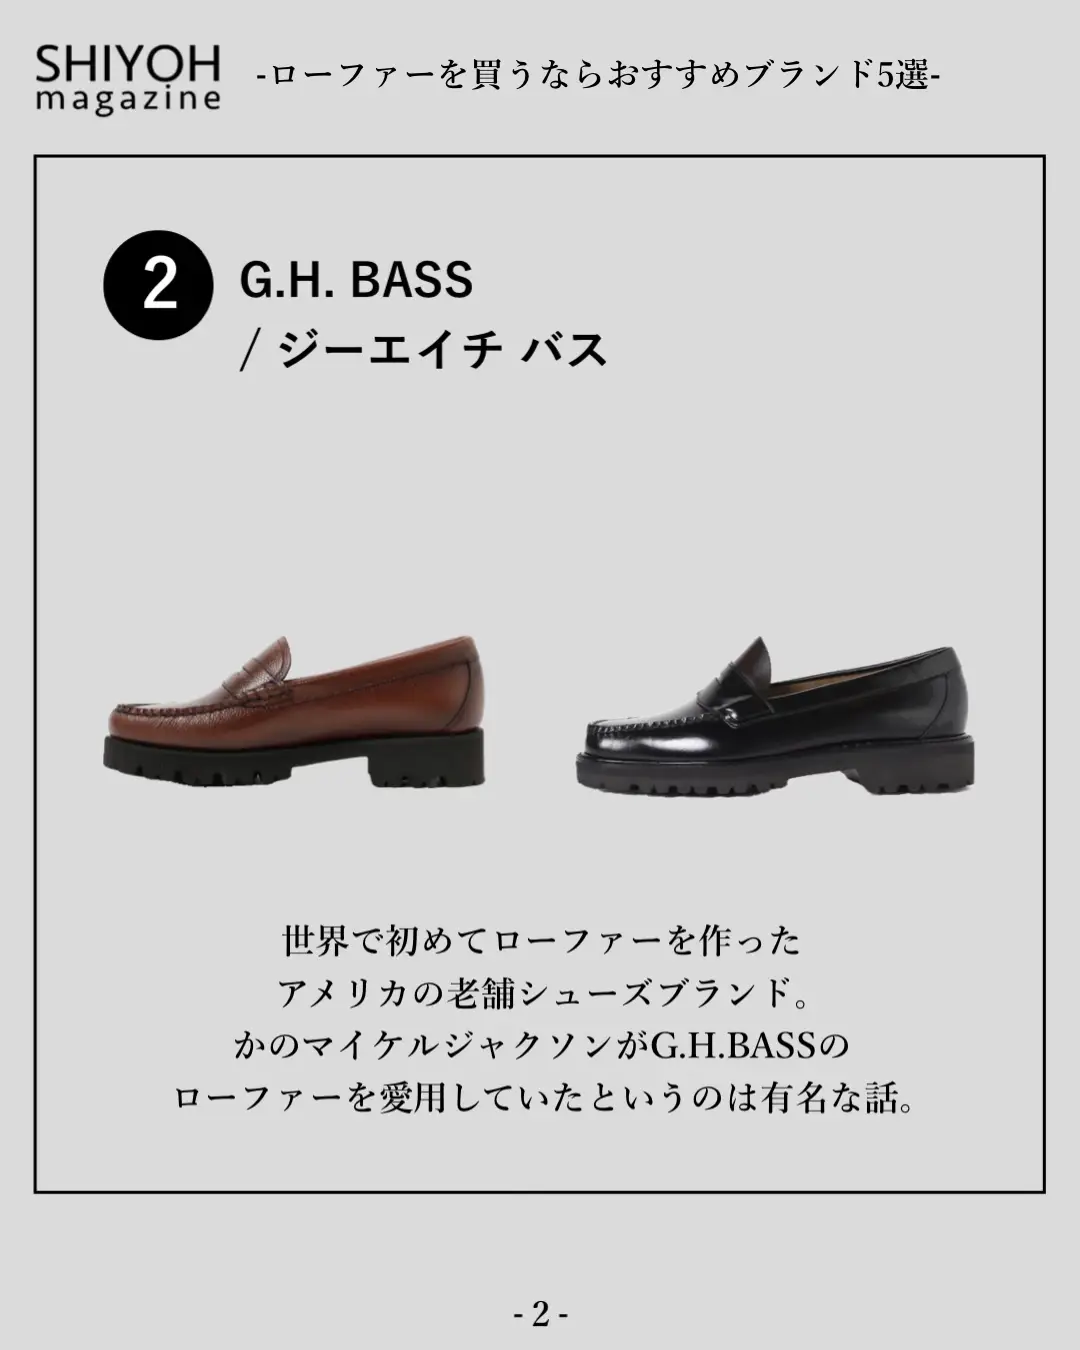 新品 G.H.BASS ホースビット タッセルローファー UK8 訳あり 今年人気のブランド品や - 靴